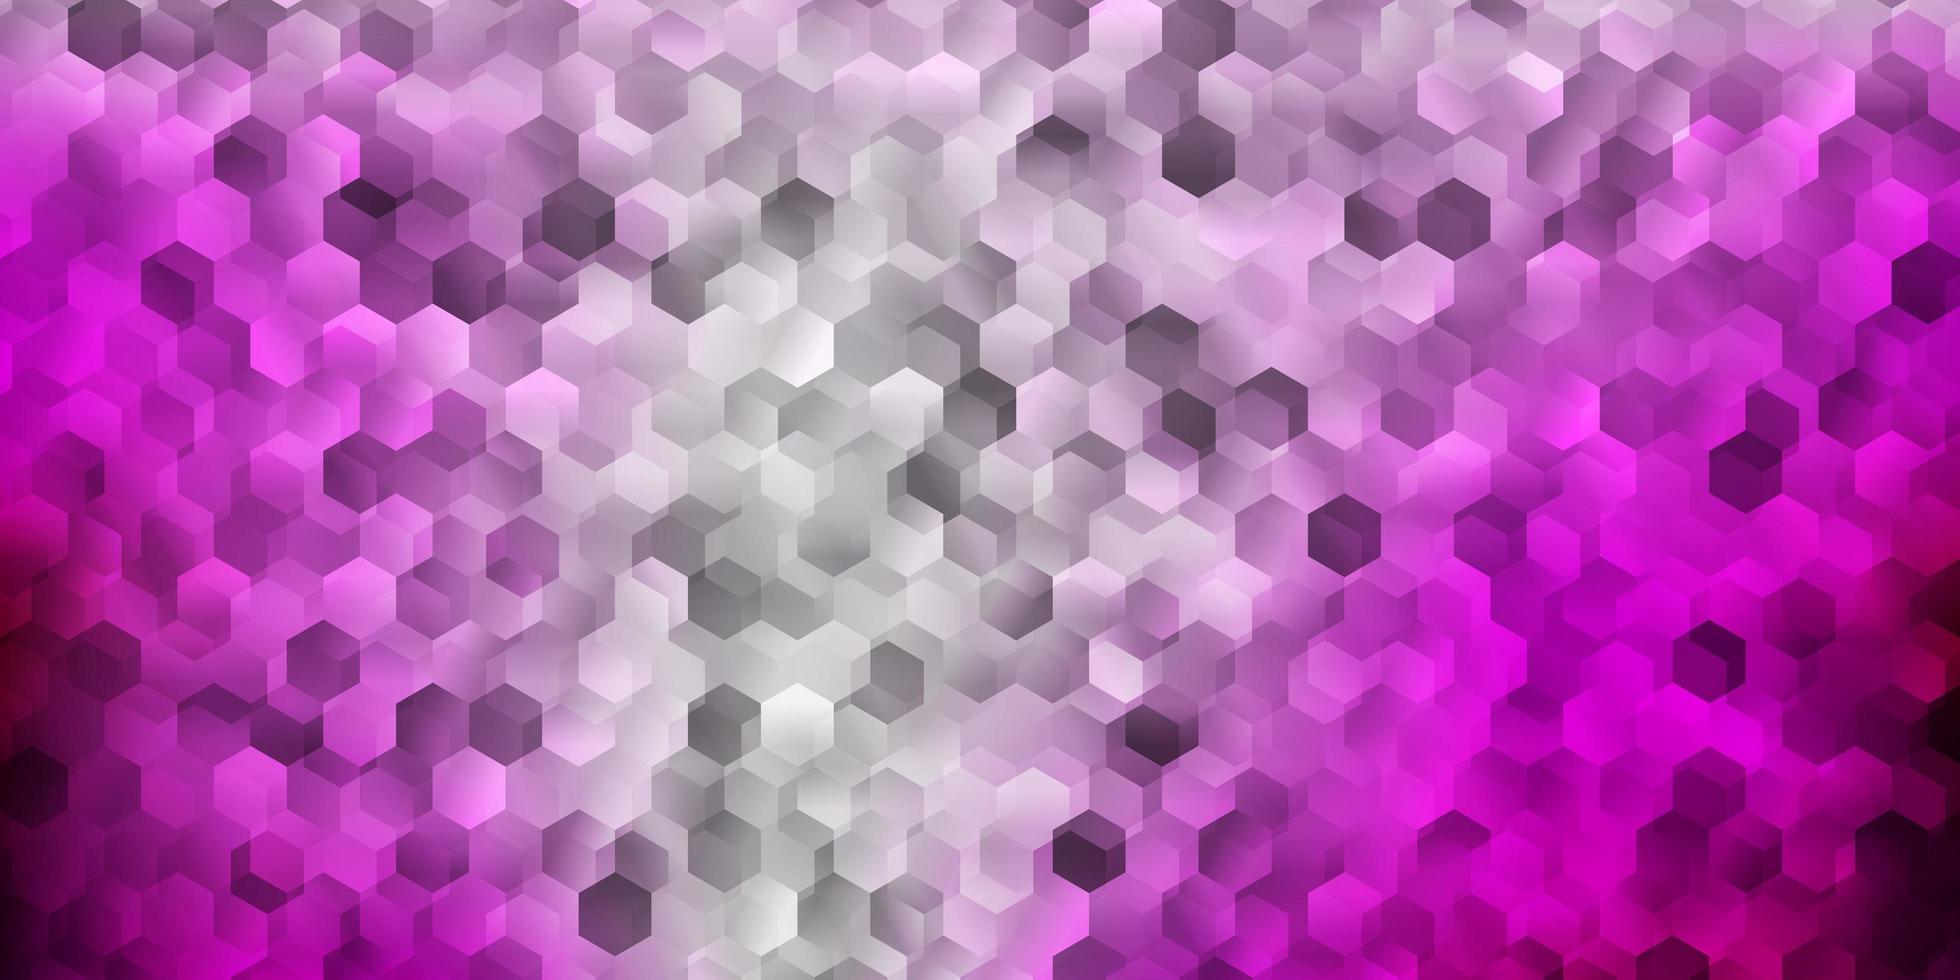 Fondo de vector rosa claro con formas hexagonales.